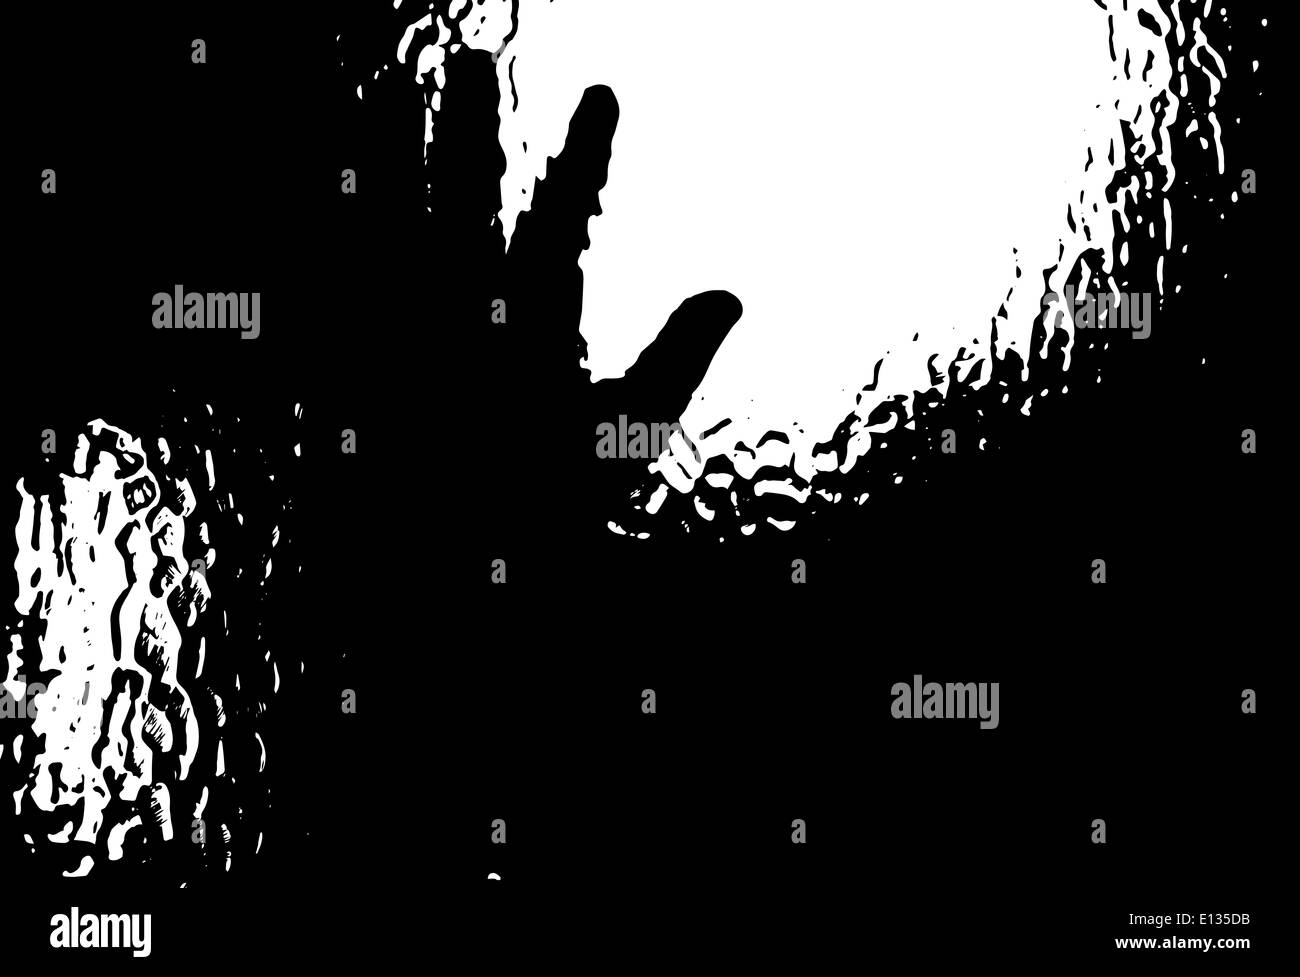 Silhouette einer Hand gegen eine Dusche Glas gedrückt Stockfotografie -  Alamy